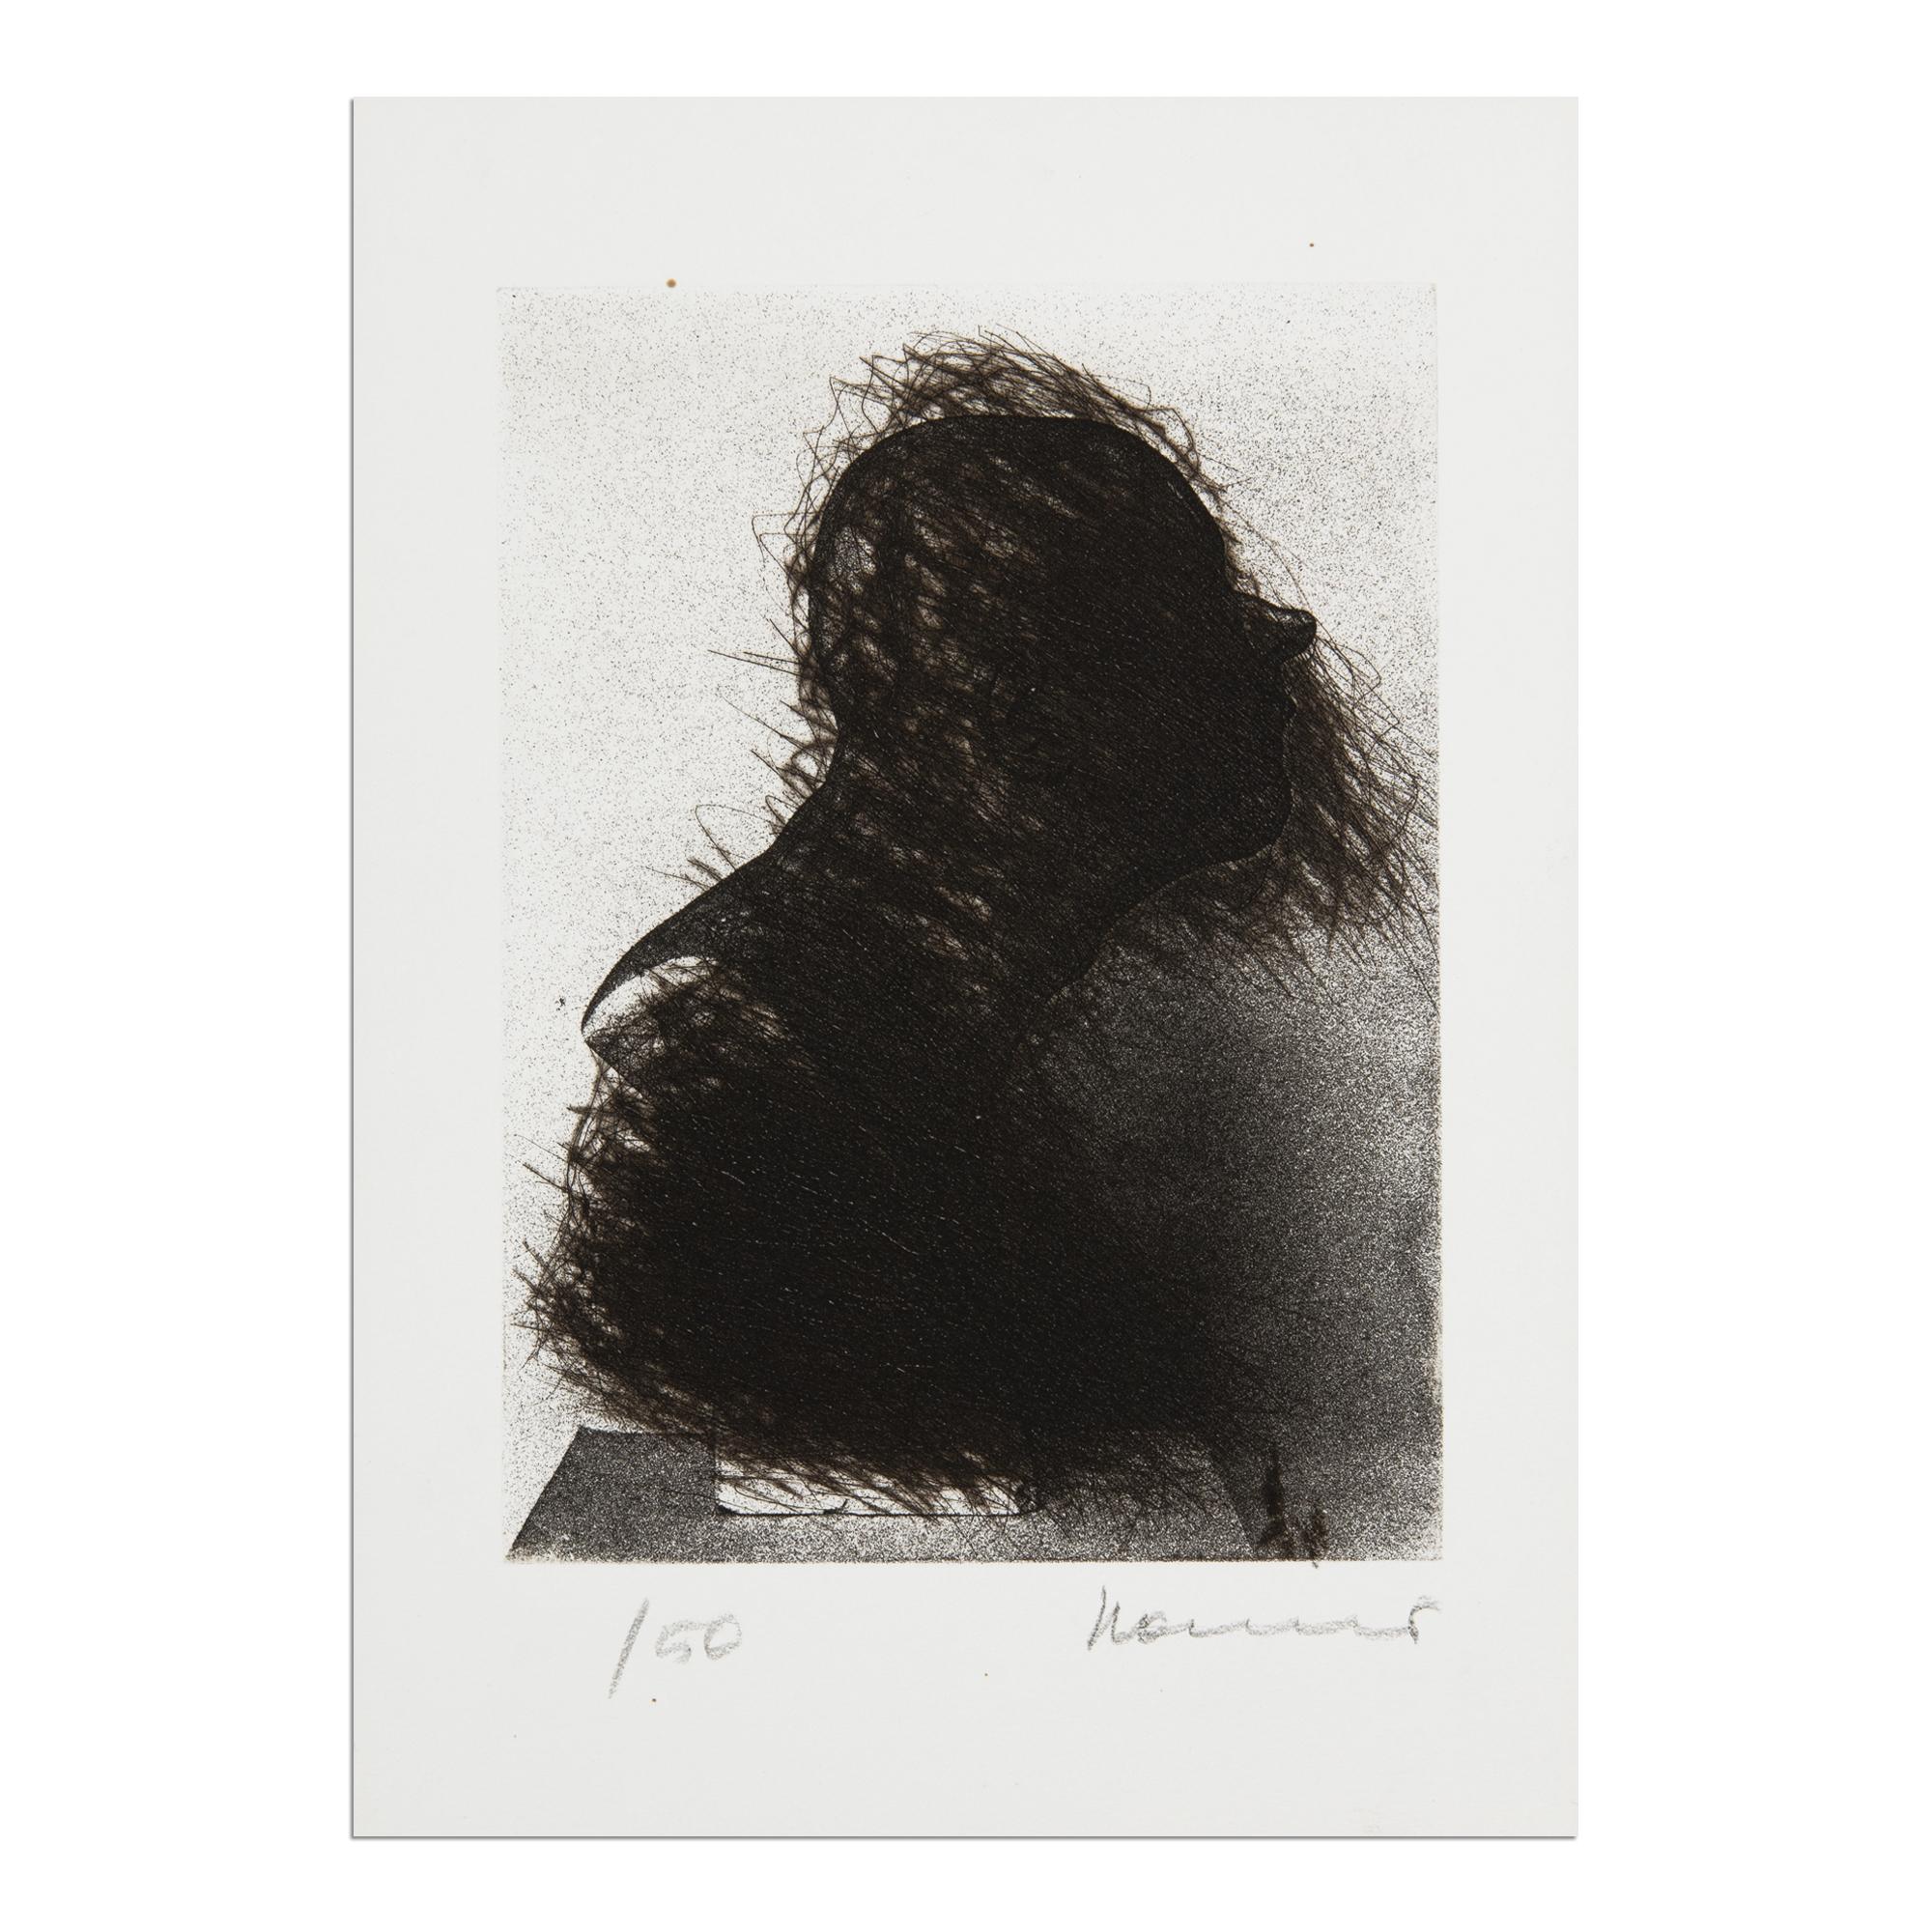 Arnulf Rainer (Autrichien, né en 1929)
Büste im Nebel, 1977
Support : Gravure à la pointe sèche sur papier vélin BFK Rives
Dimensions : 29,8 × 20,8 cm (11 7/10 × 8 1/5 in) : 29,8 × 20,8 cm (11 7/10 × 8 1/5 in)
Edition de 50 exemplaires : signés et